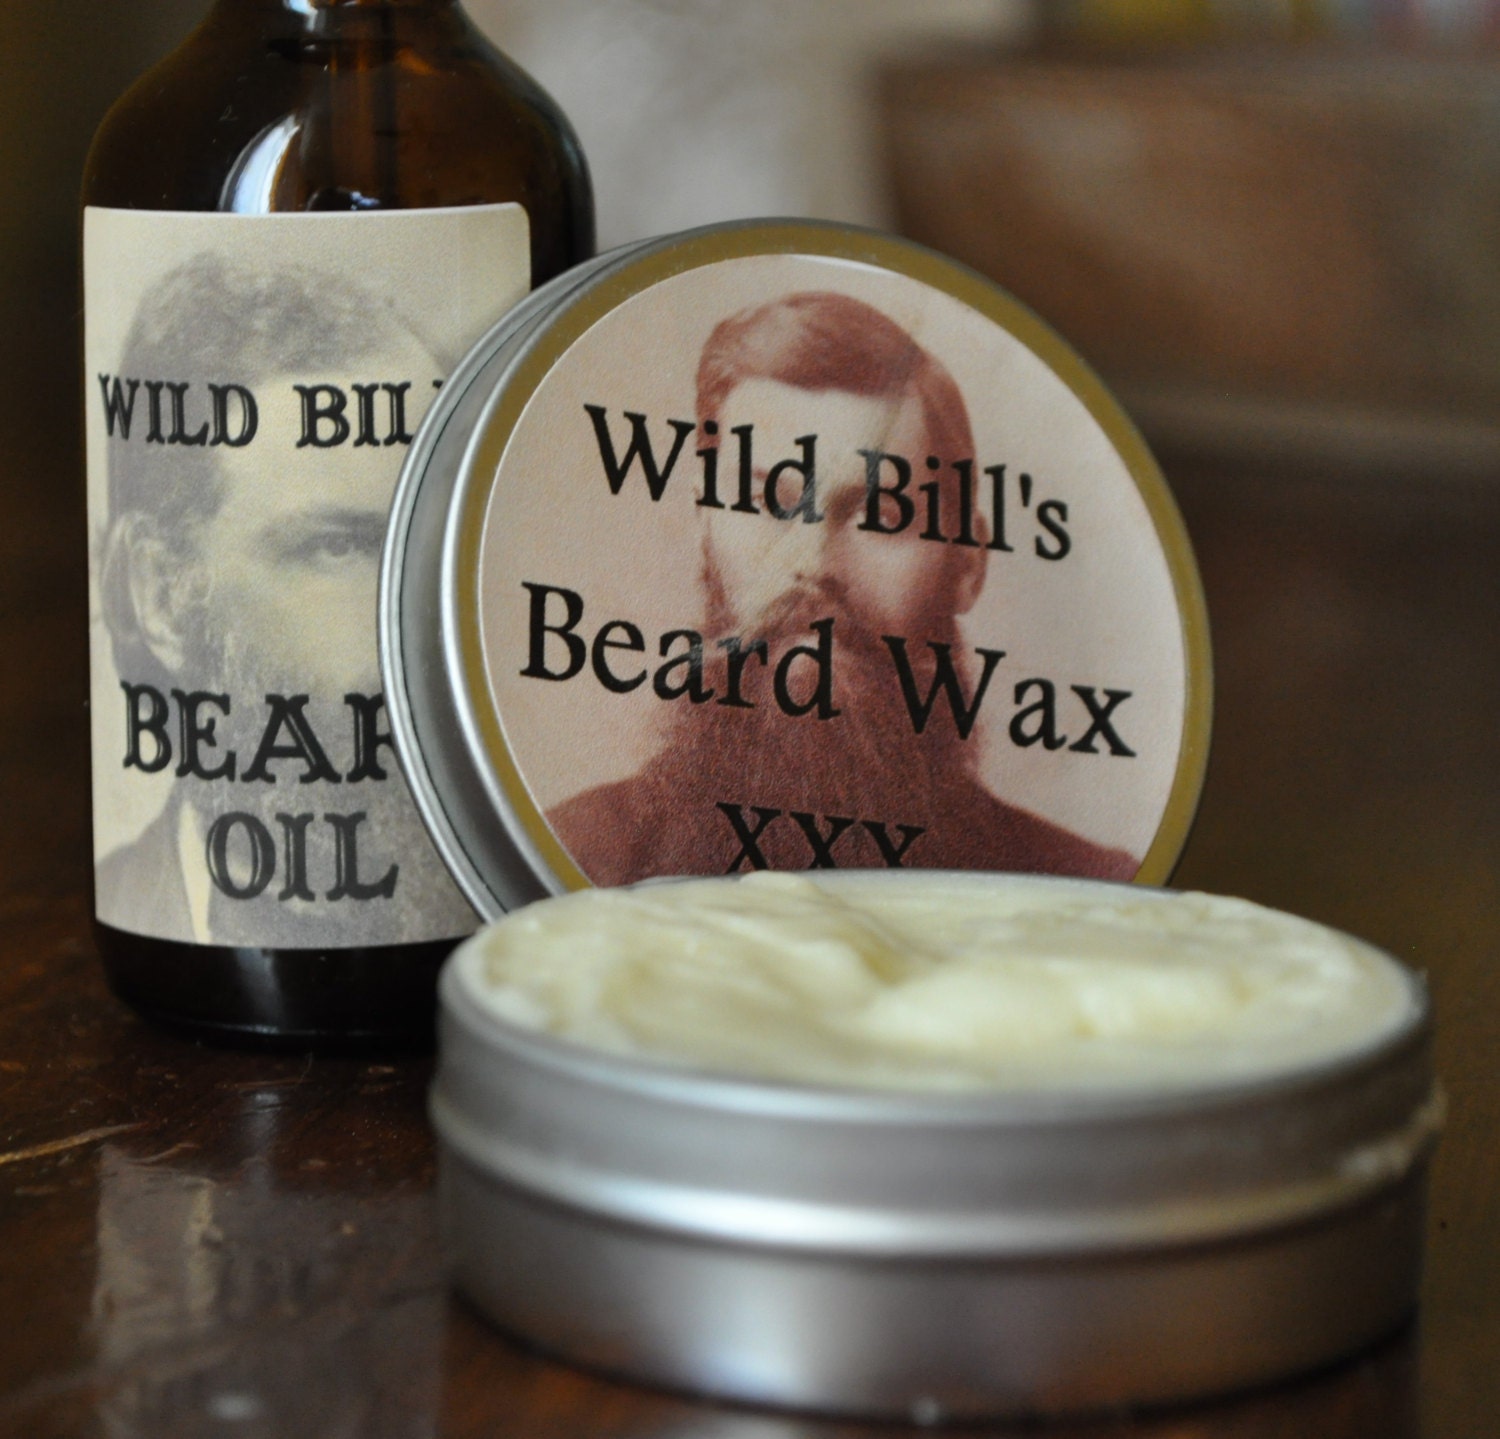 beard wax